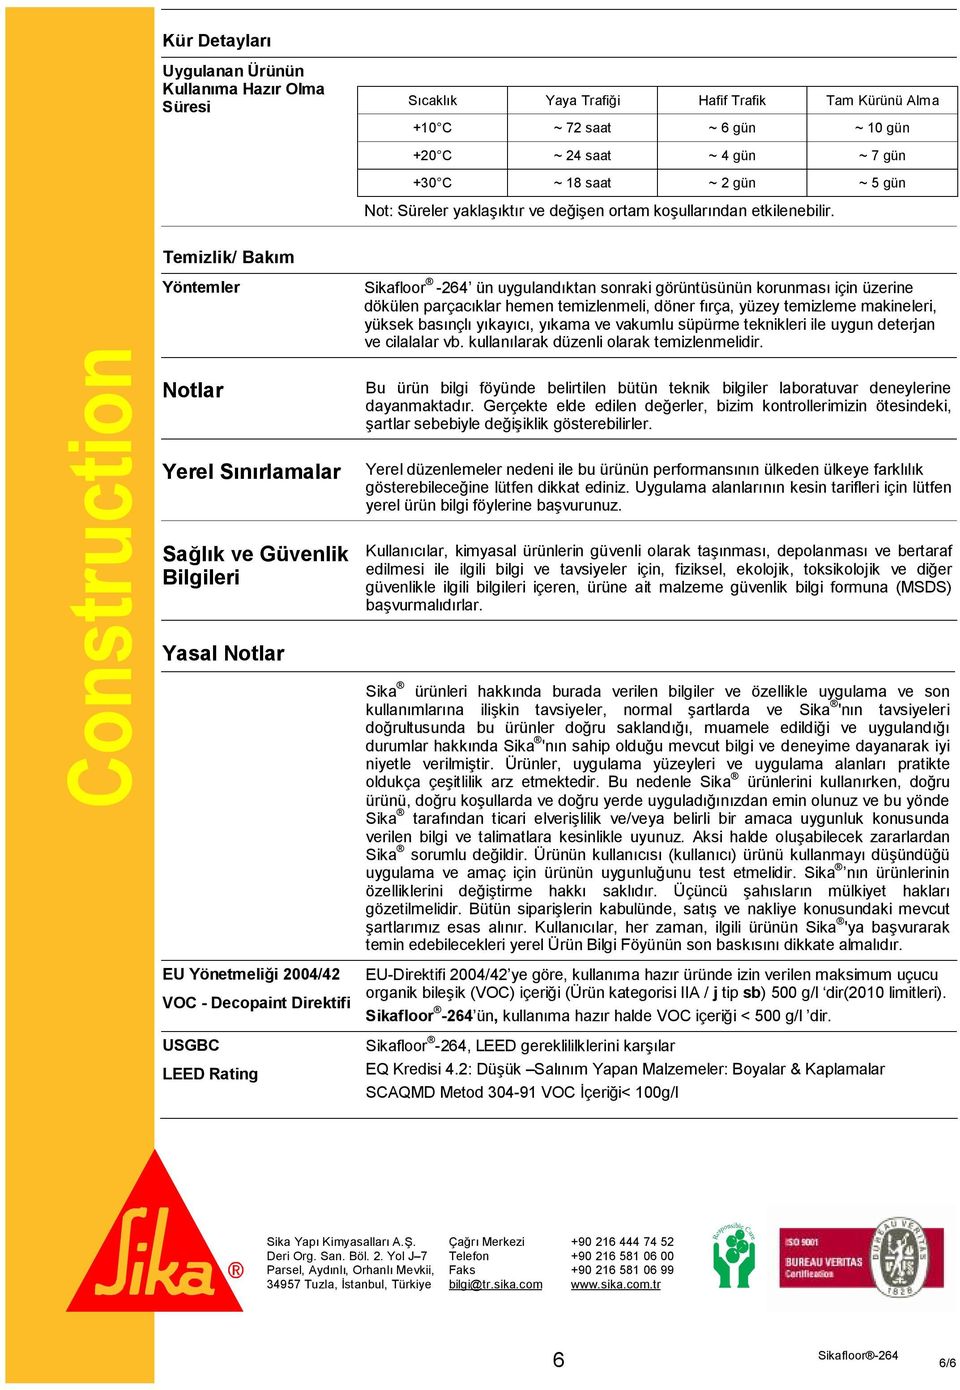 Construction Temizlik/ Bakım Yöntemler Notlar Yerel Sınırlamalar Sağlık ve Güvenlik Bilgileri Yasal Notlar EU Yönetmeliği 2004/42 VOC - Decopaint Direktifi USGBC LEED Rating Sikafloor -264 ün